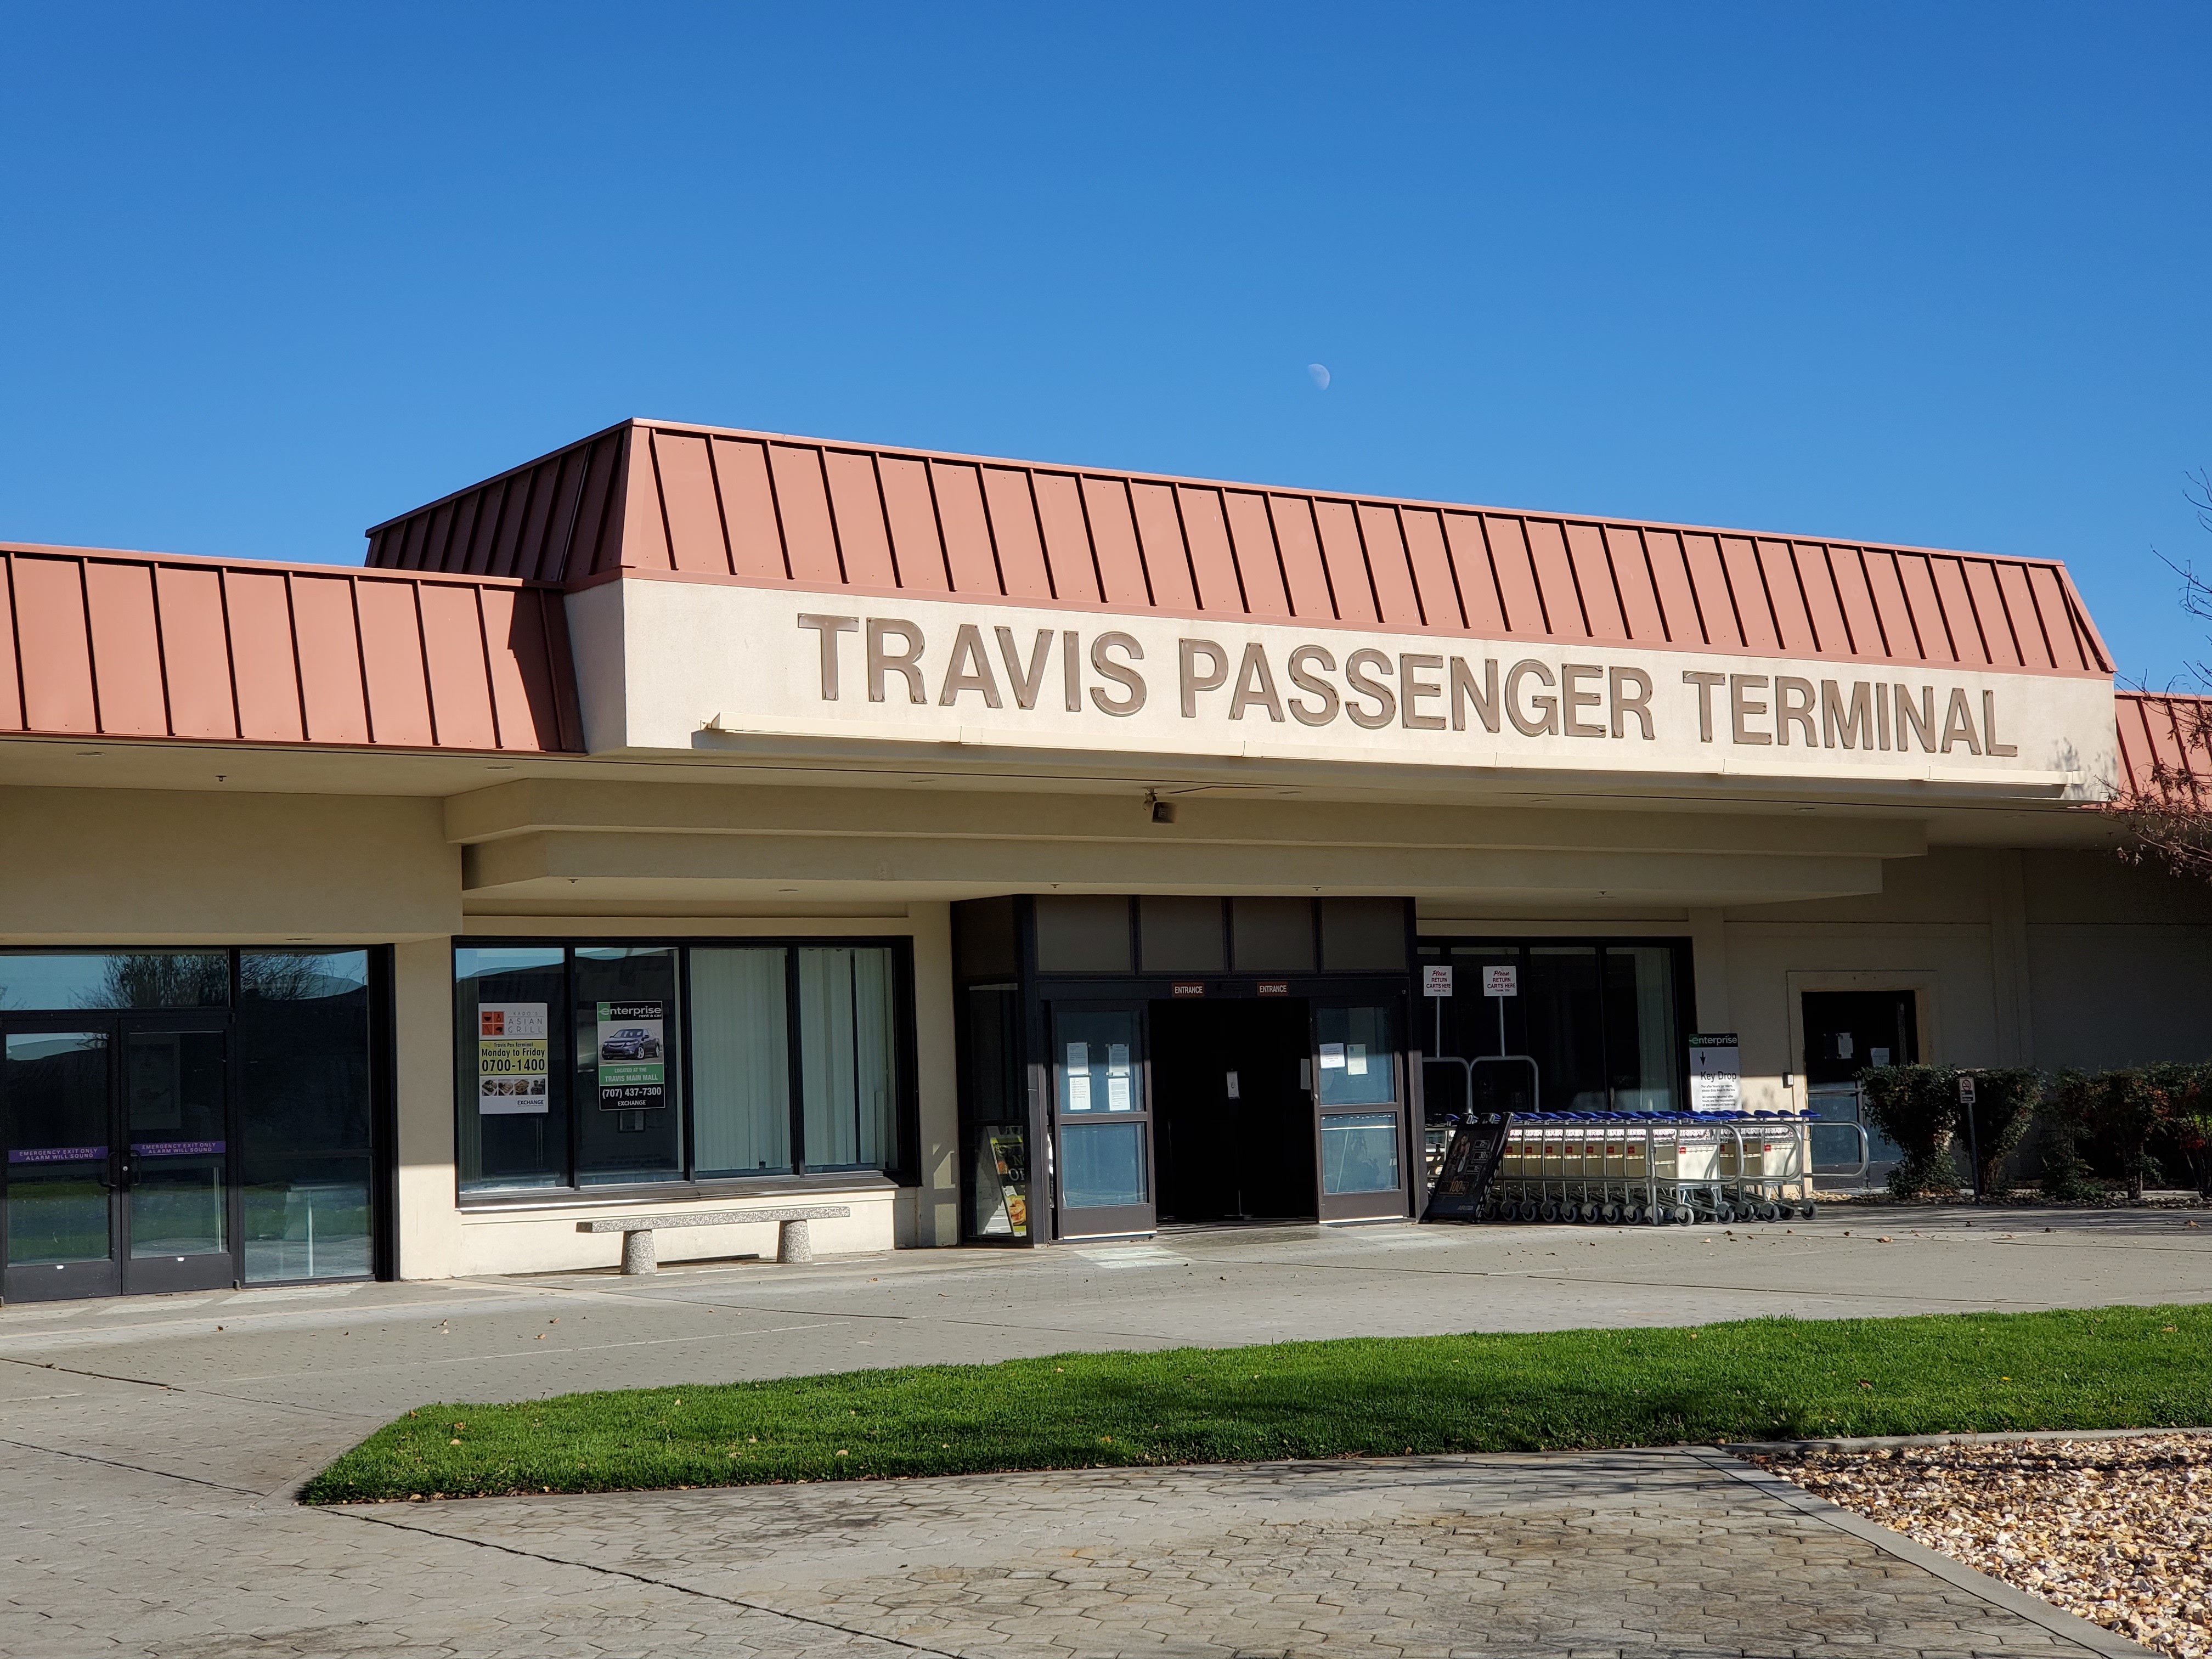 Travis Passenger Terminal